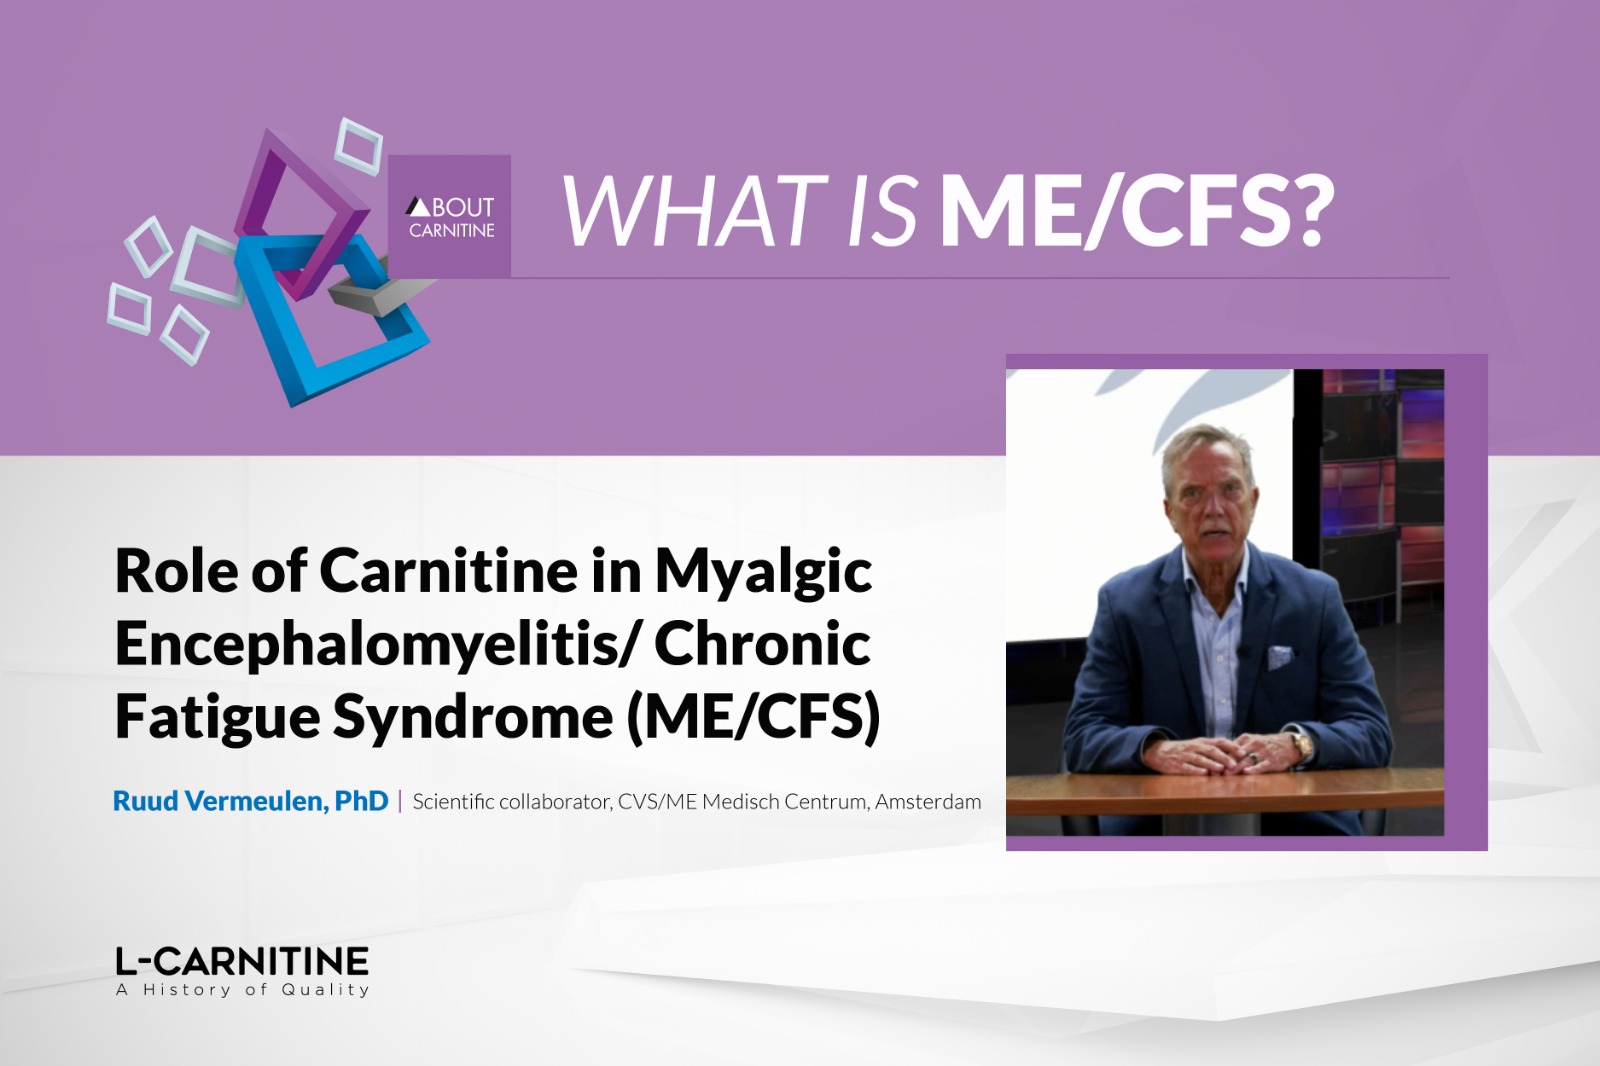 Role of Carnitine in Myalgic Encephalomyelitis/Chronic Fatigue Syndrome (ME/CFS)